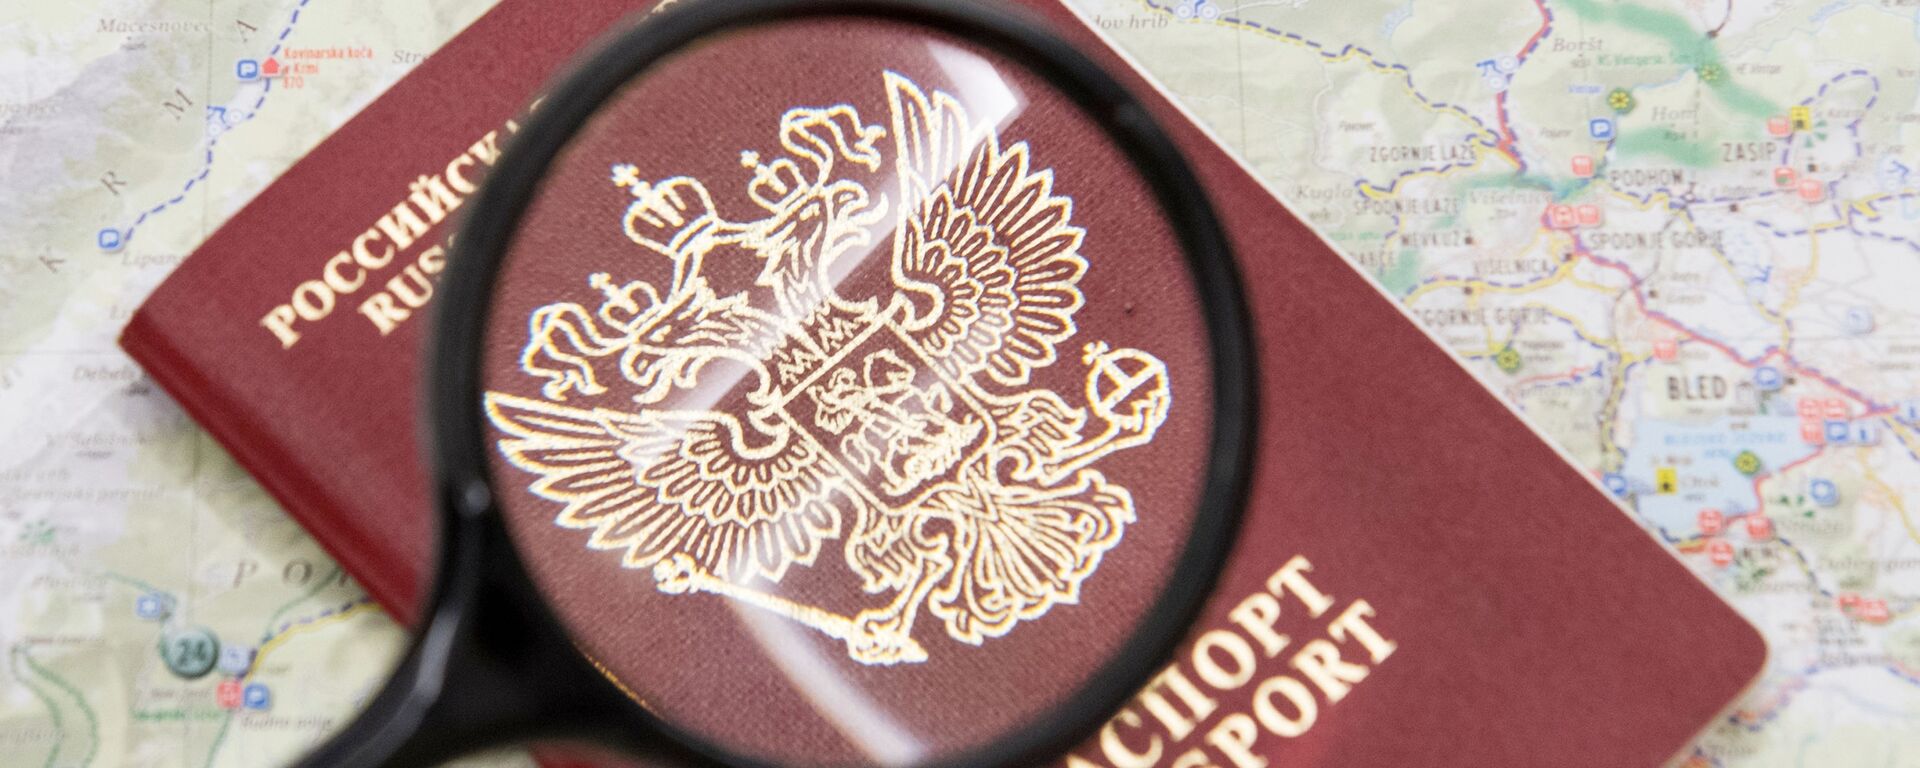 Паспорт гражданина Российской Федерации. - Sputnik Латвия, 1920, 02.11.2020